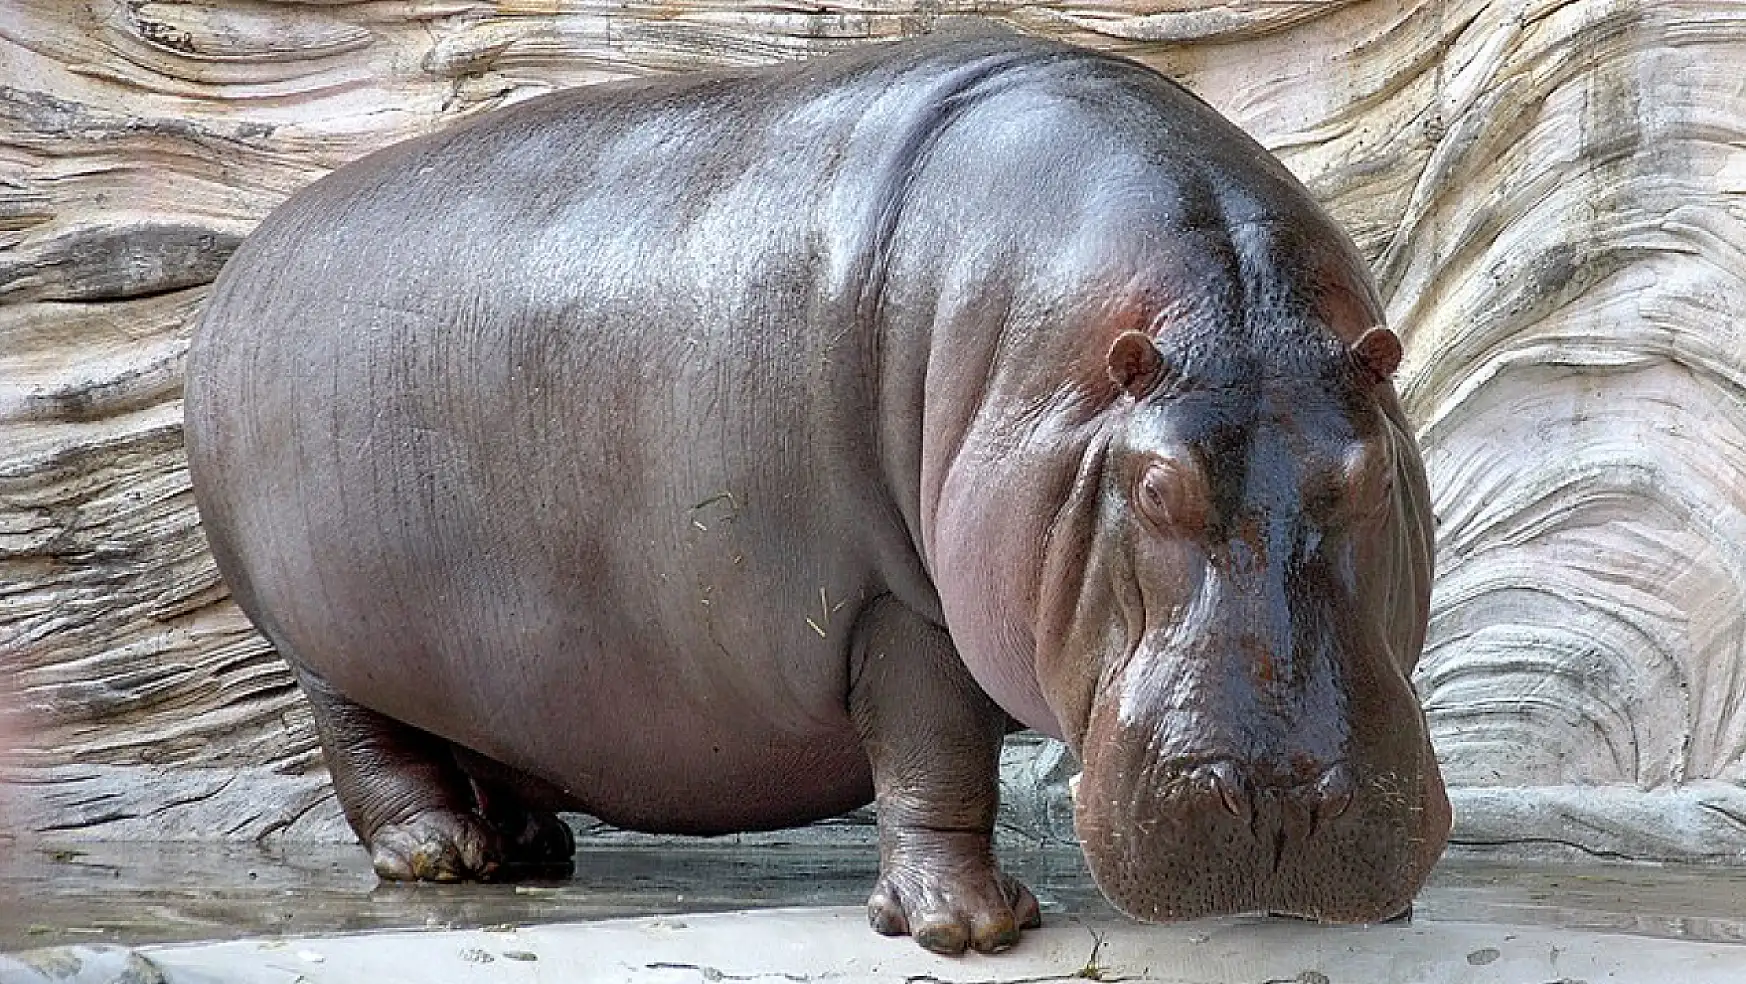 Hayvanat Bahçesinde Hipopotamın 7 Yıl sonra Dişi Olduğunu Anladılar